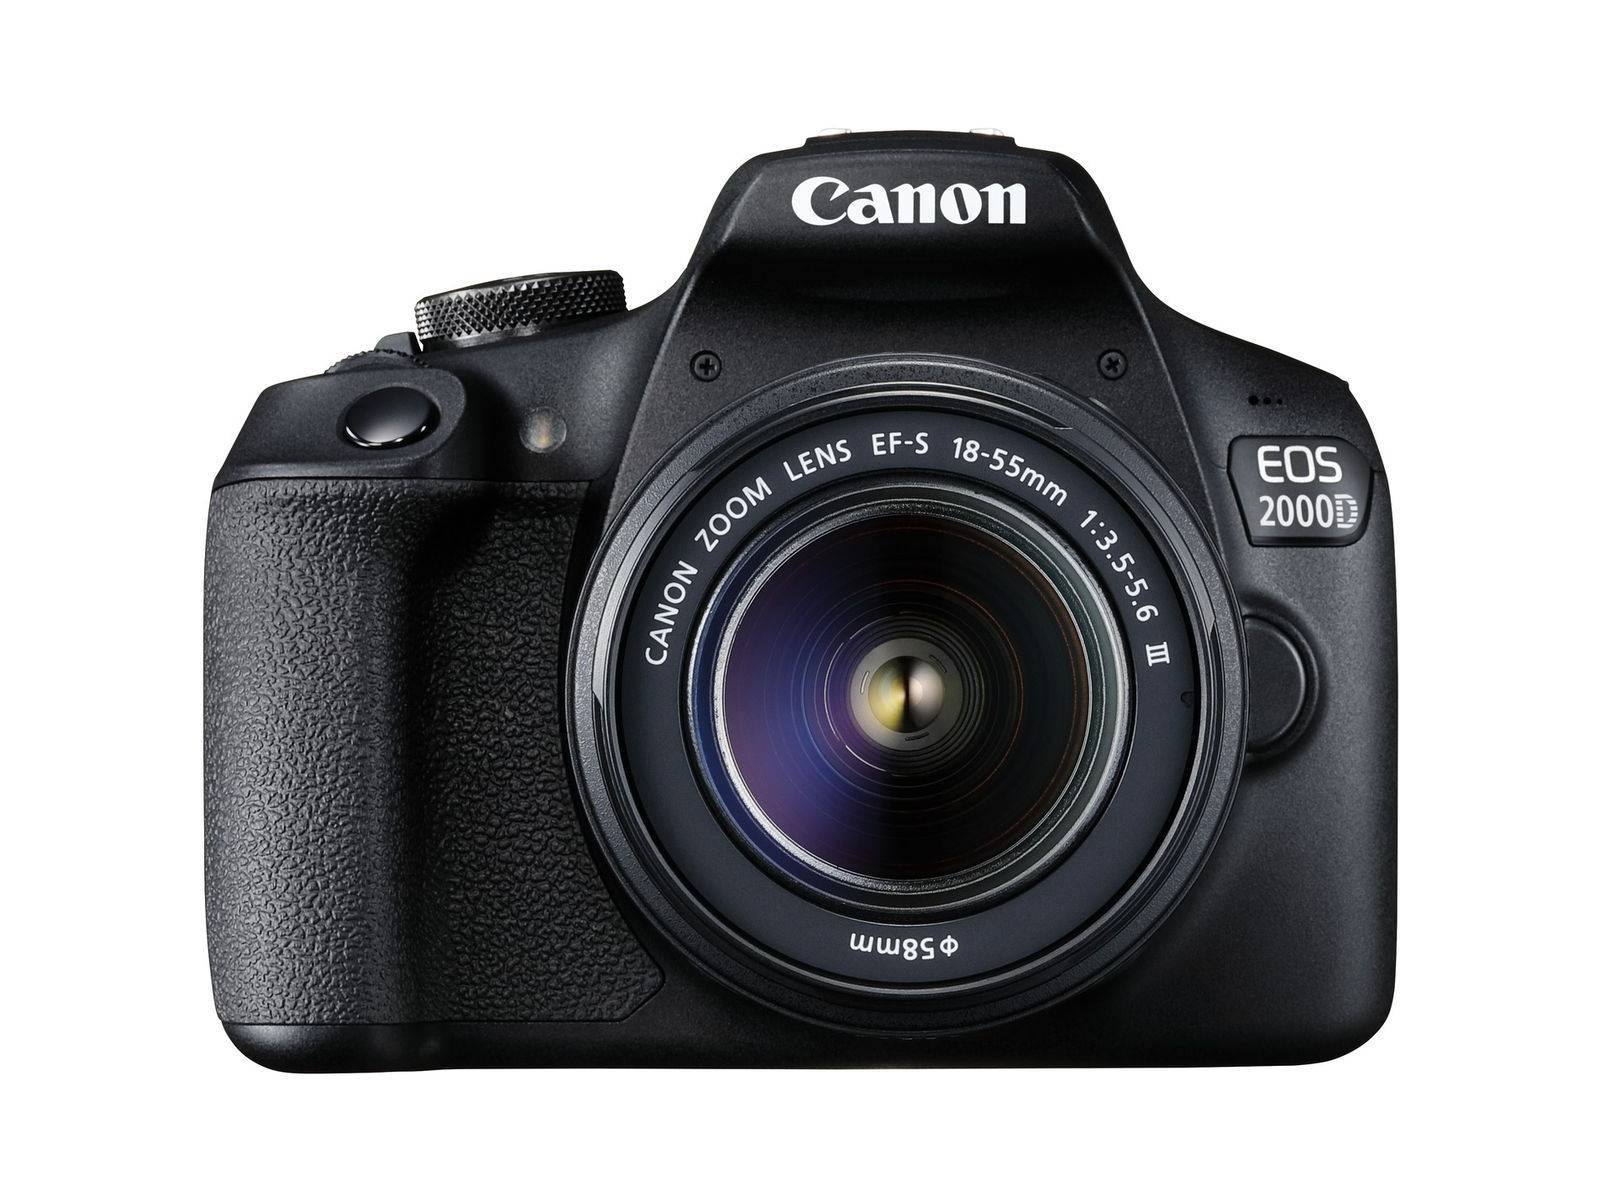 Canon Appareil photo Reflex EOS 250D + 18-55mm IS STM + 50mm f/1.8 pas cher  